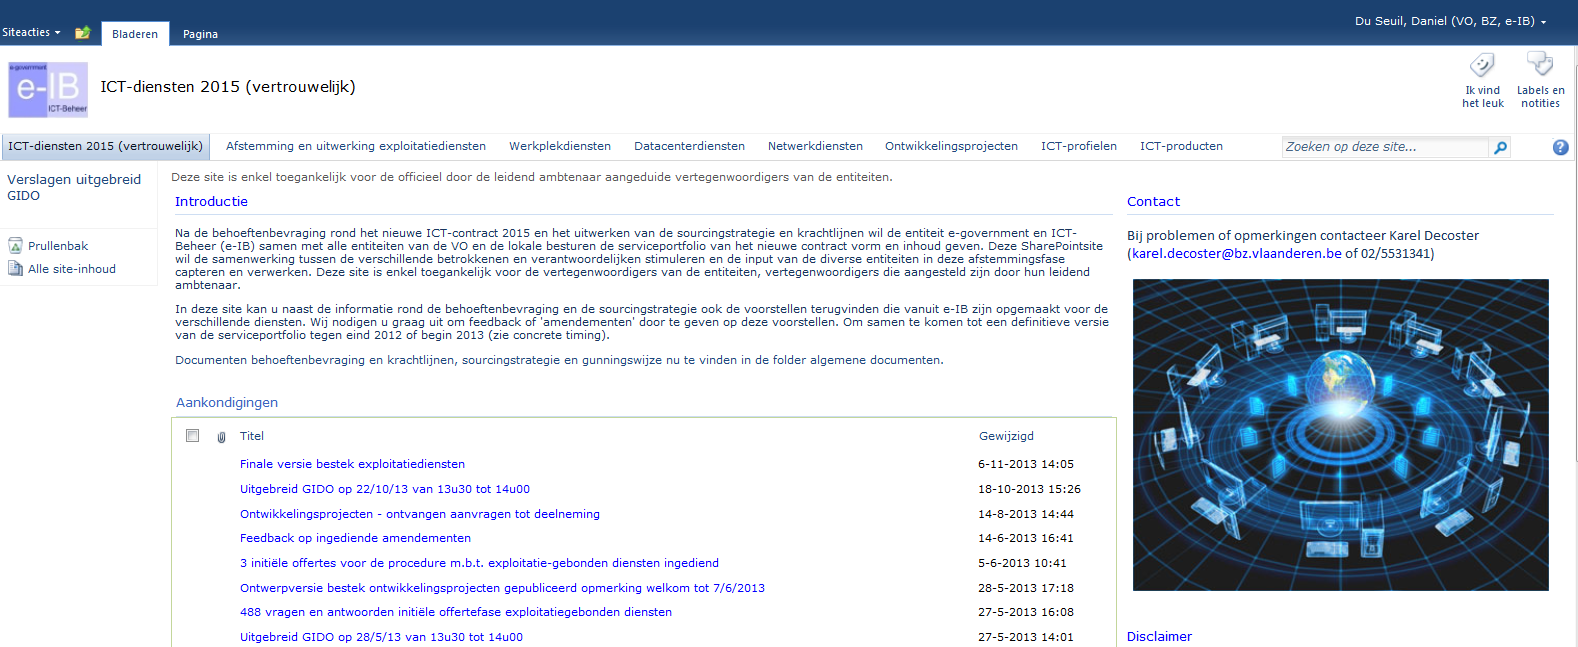 ICT-raamcontracten - Meer info? www.bestuurszaken.